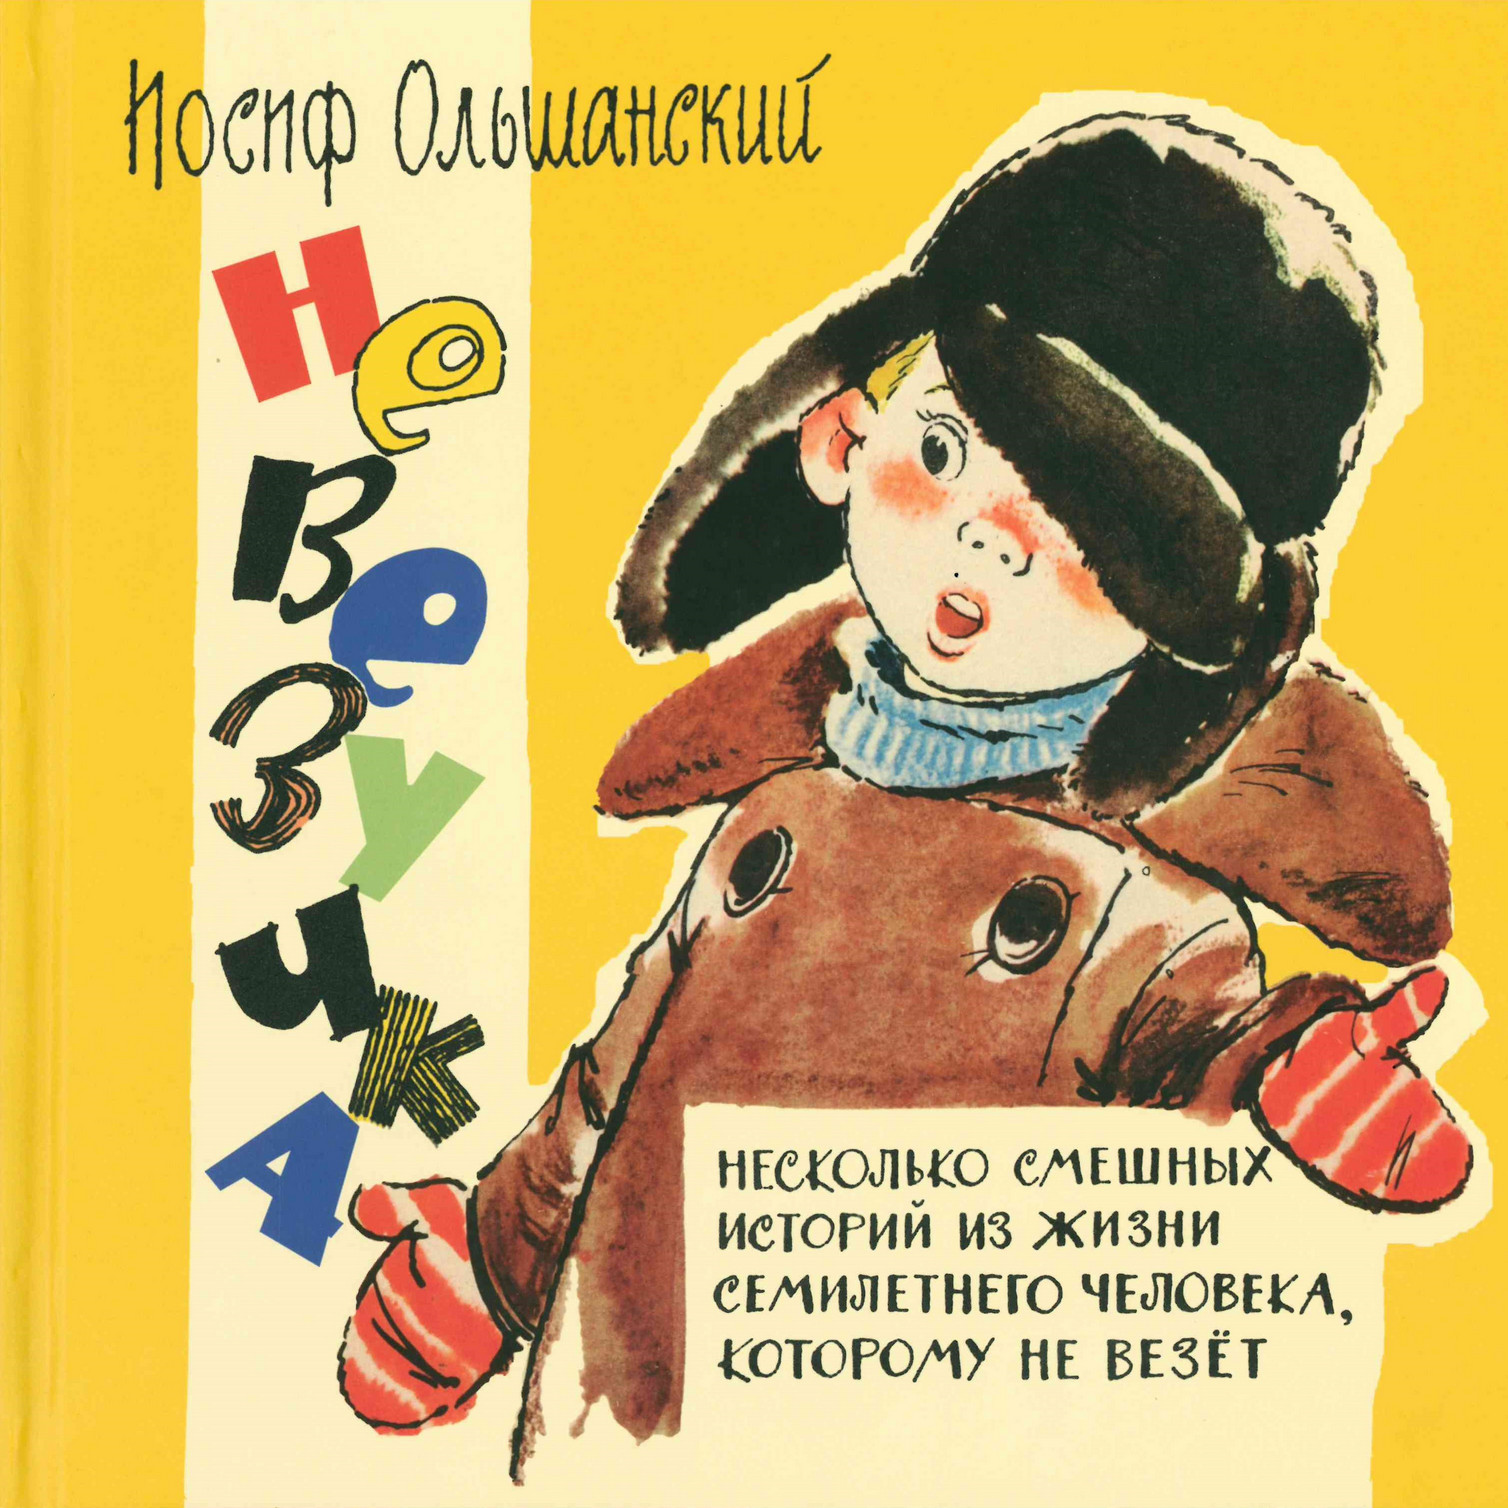 Ольшанский И. Невезучка: несколько смешных историй из жизни семилетнего человека, которому не везет